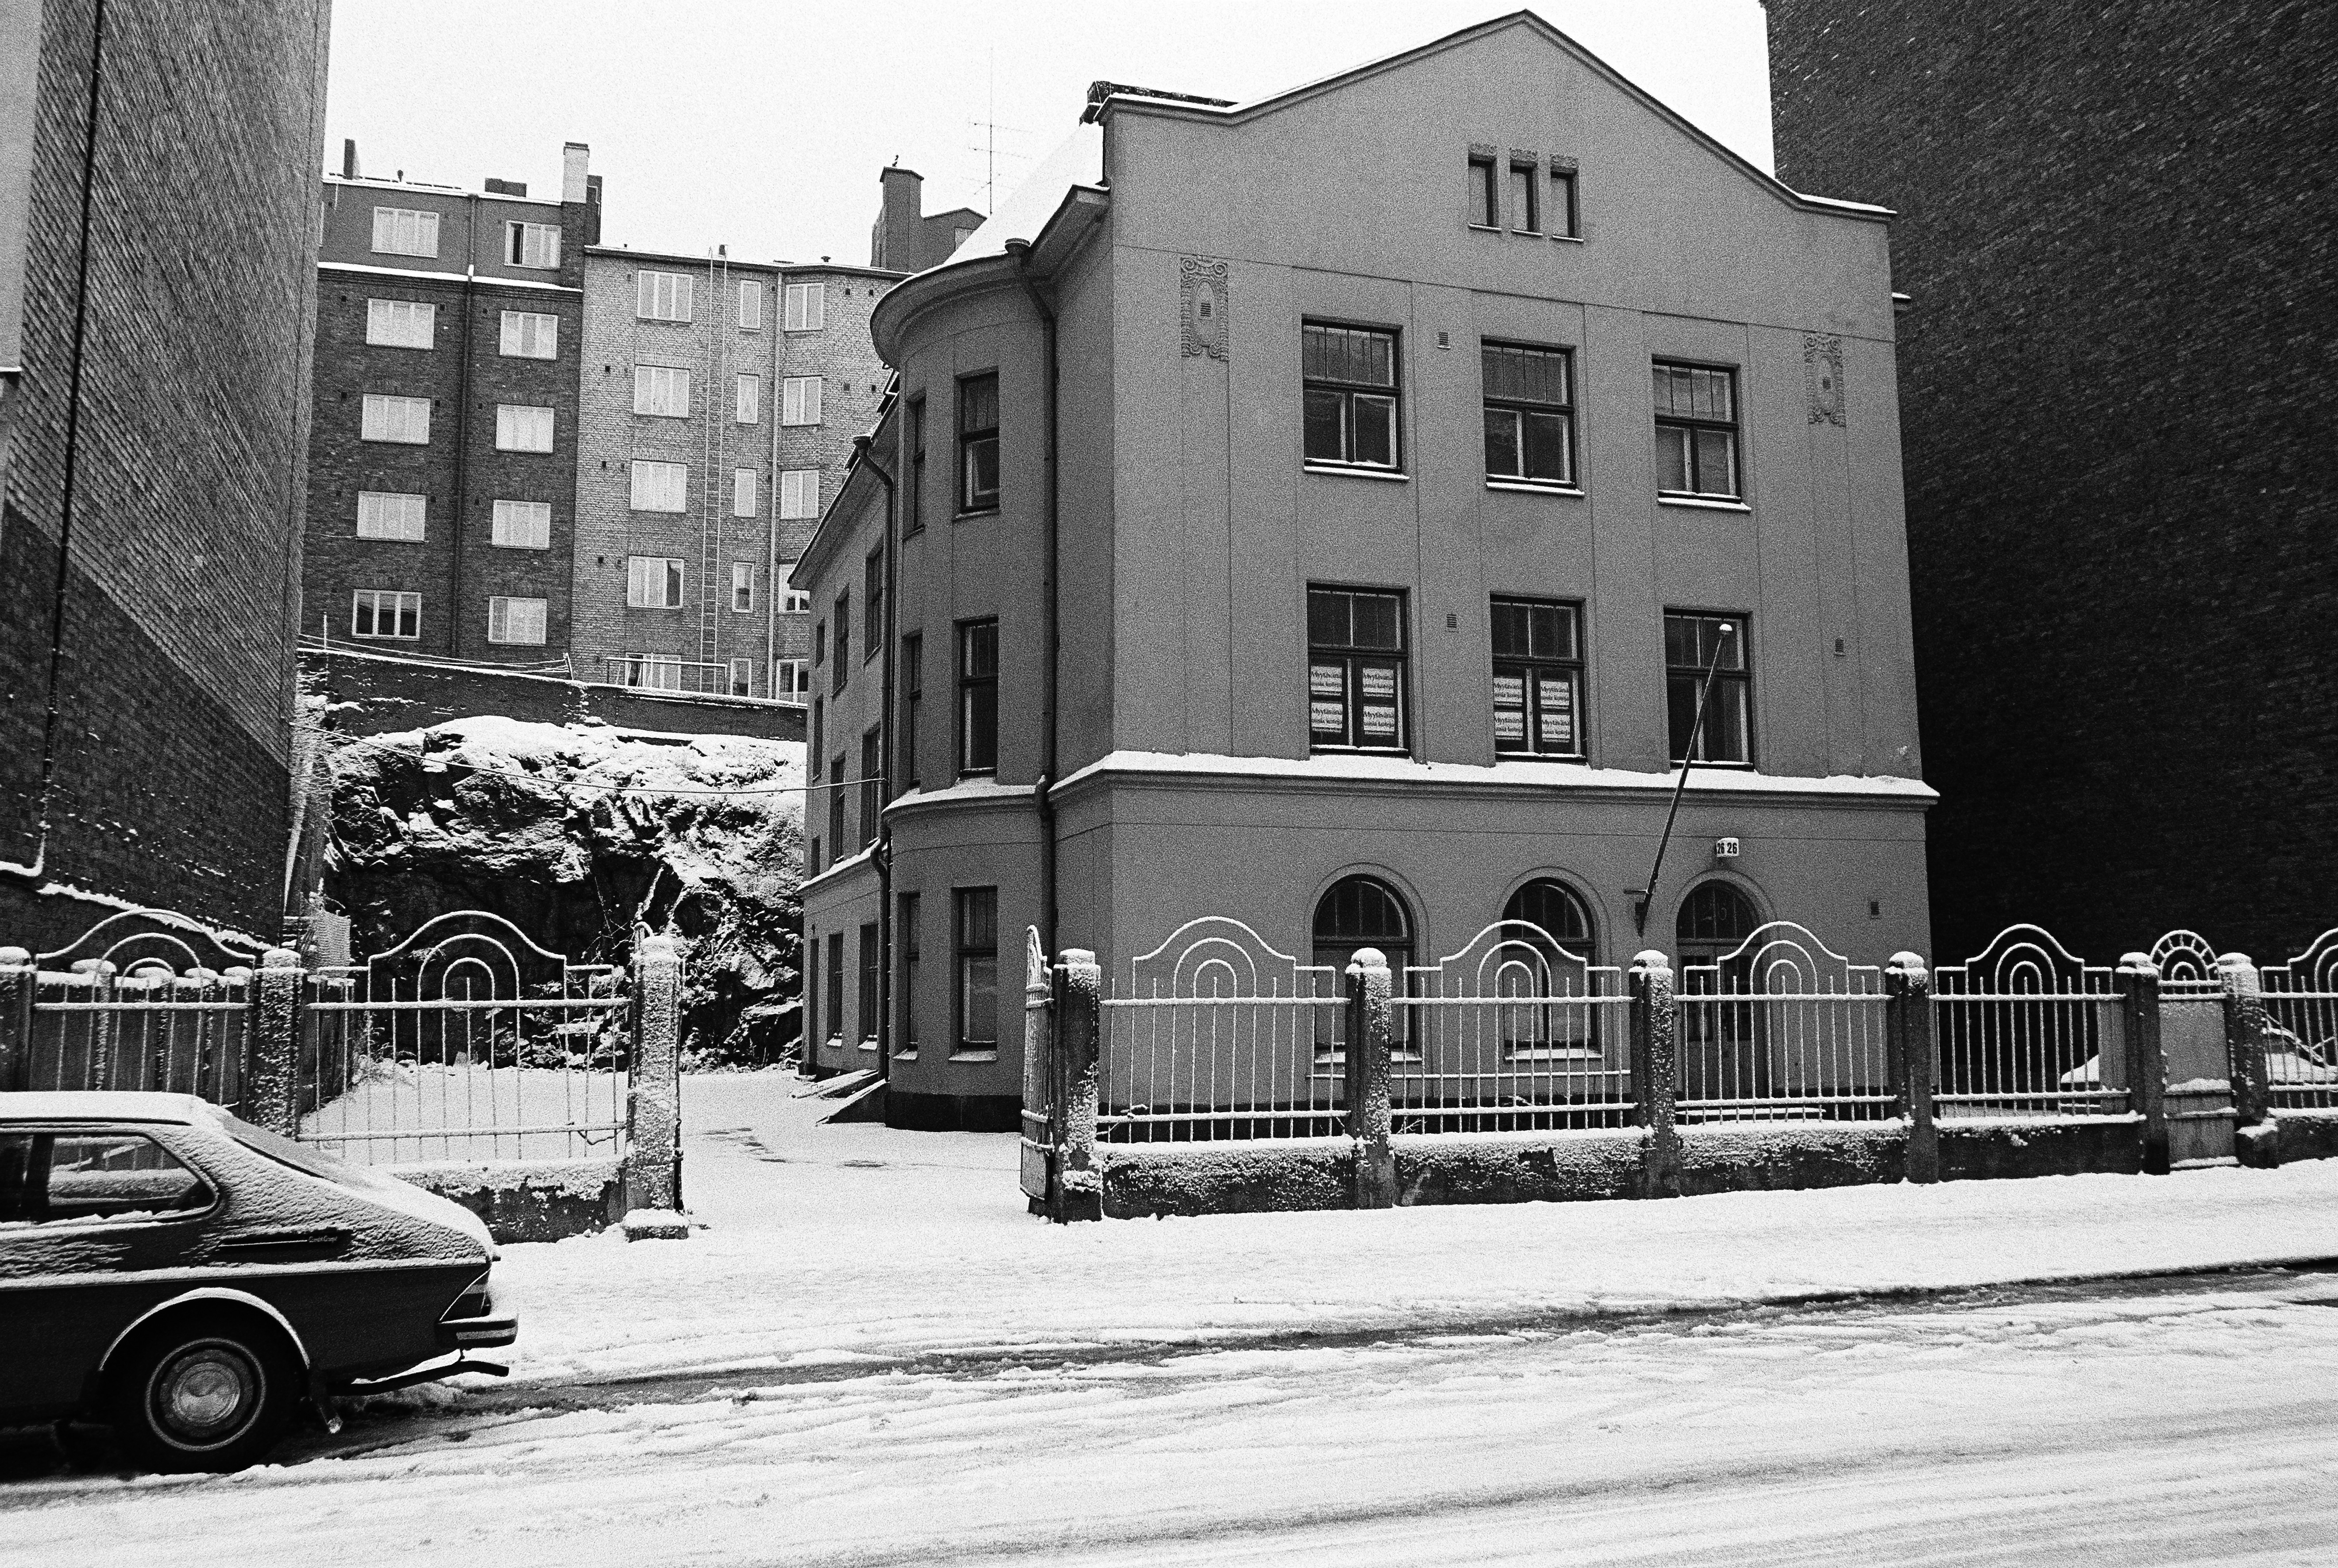 Ensilumi Töölössä vuonna 1973. Kuvassa Museokatu 26. Onni Tarjanteen suunnittelema, hattutehtaanakin toiminut, pieni jugend-tyylinen talo. Tämä oli 1910-luvulla rakennettuna kadun ensimmäisiä taloja, sekä viimeisiä 1970-luvulla purettuja taloja.